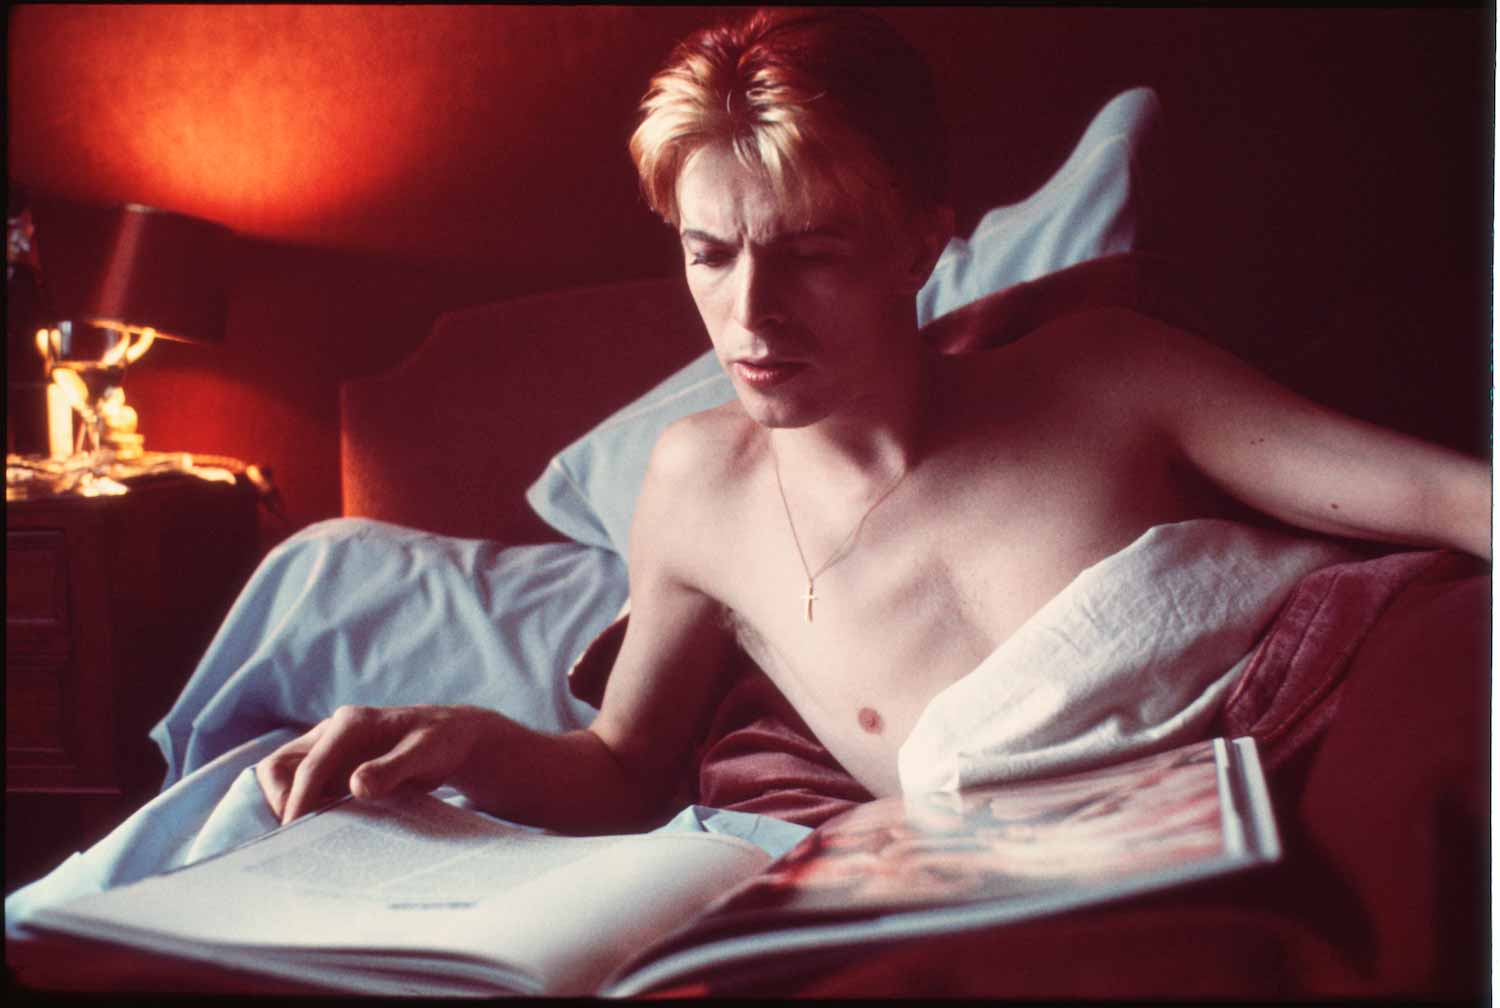 David Bowie legge un libro nel suo letto durante una rara mattinata tranquilla nella sua suite in un hotel di Parigi (1976)